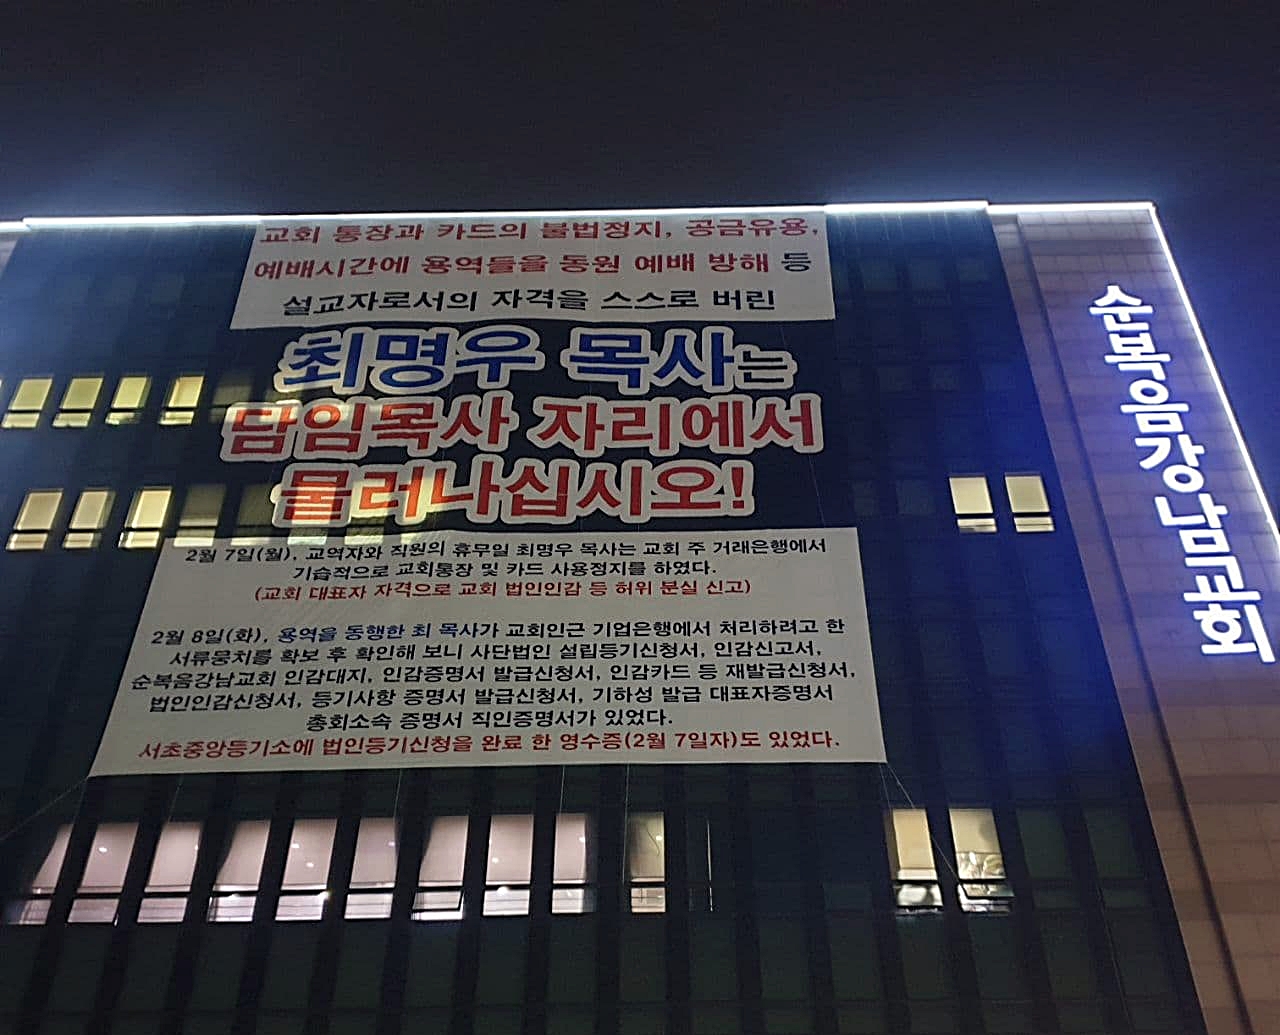 순복음강남교회 본관에 설치된 대형 현수막. 최명우 목사의 사퇴를 촉구하고 있다. (사진=제보자 제공)